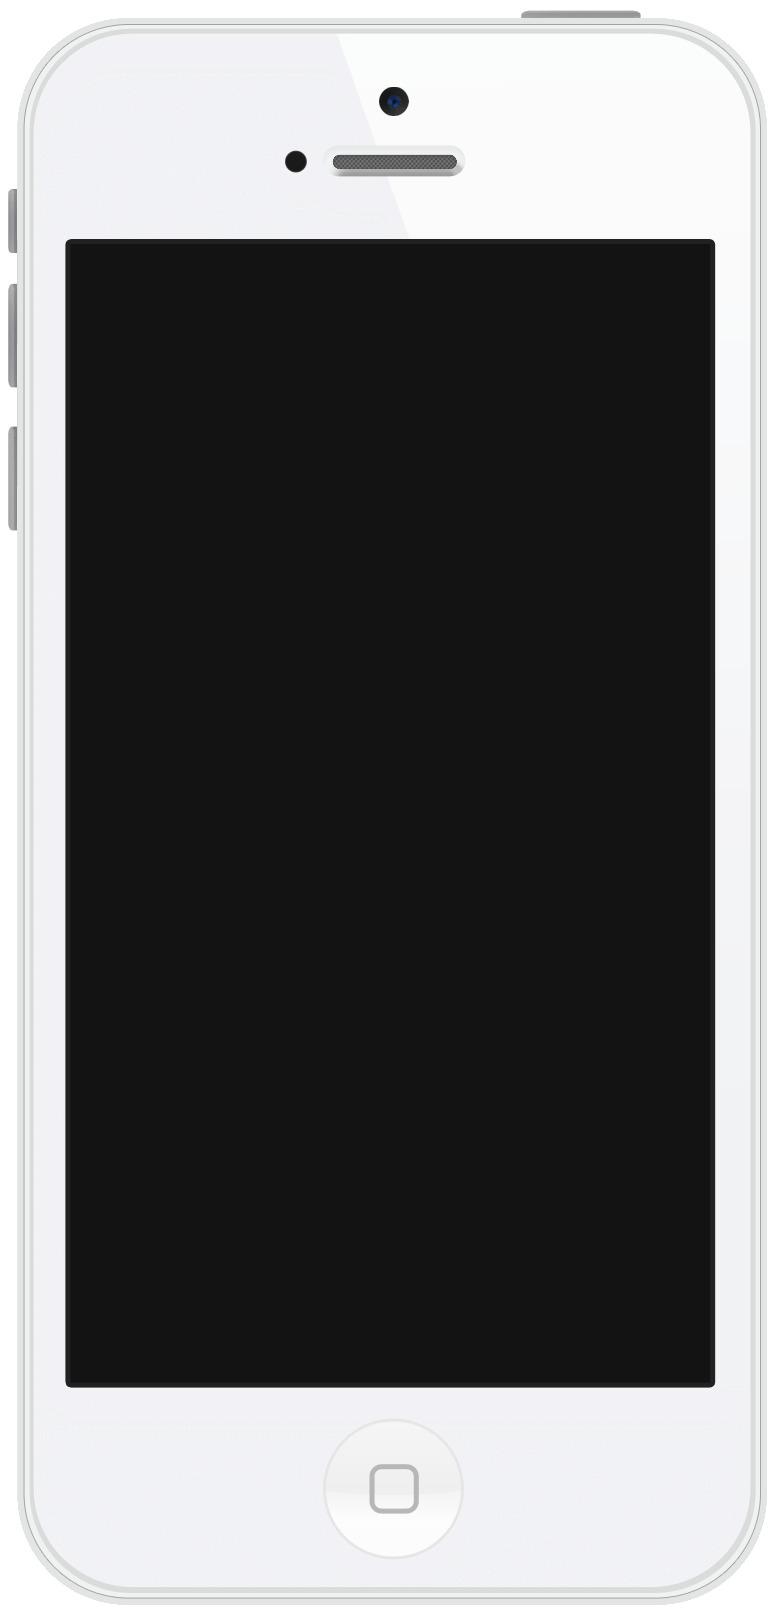 Portrait White Iphone png transparent